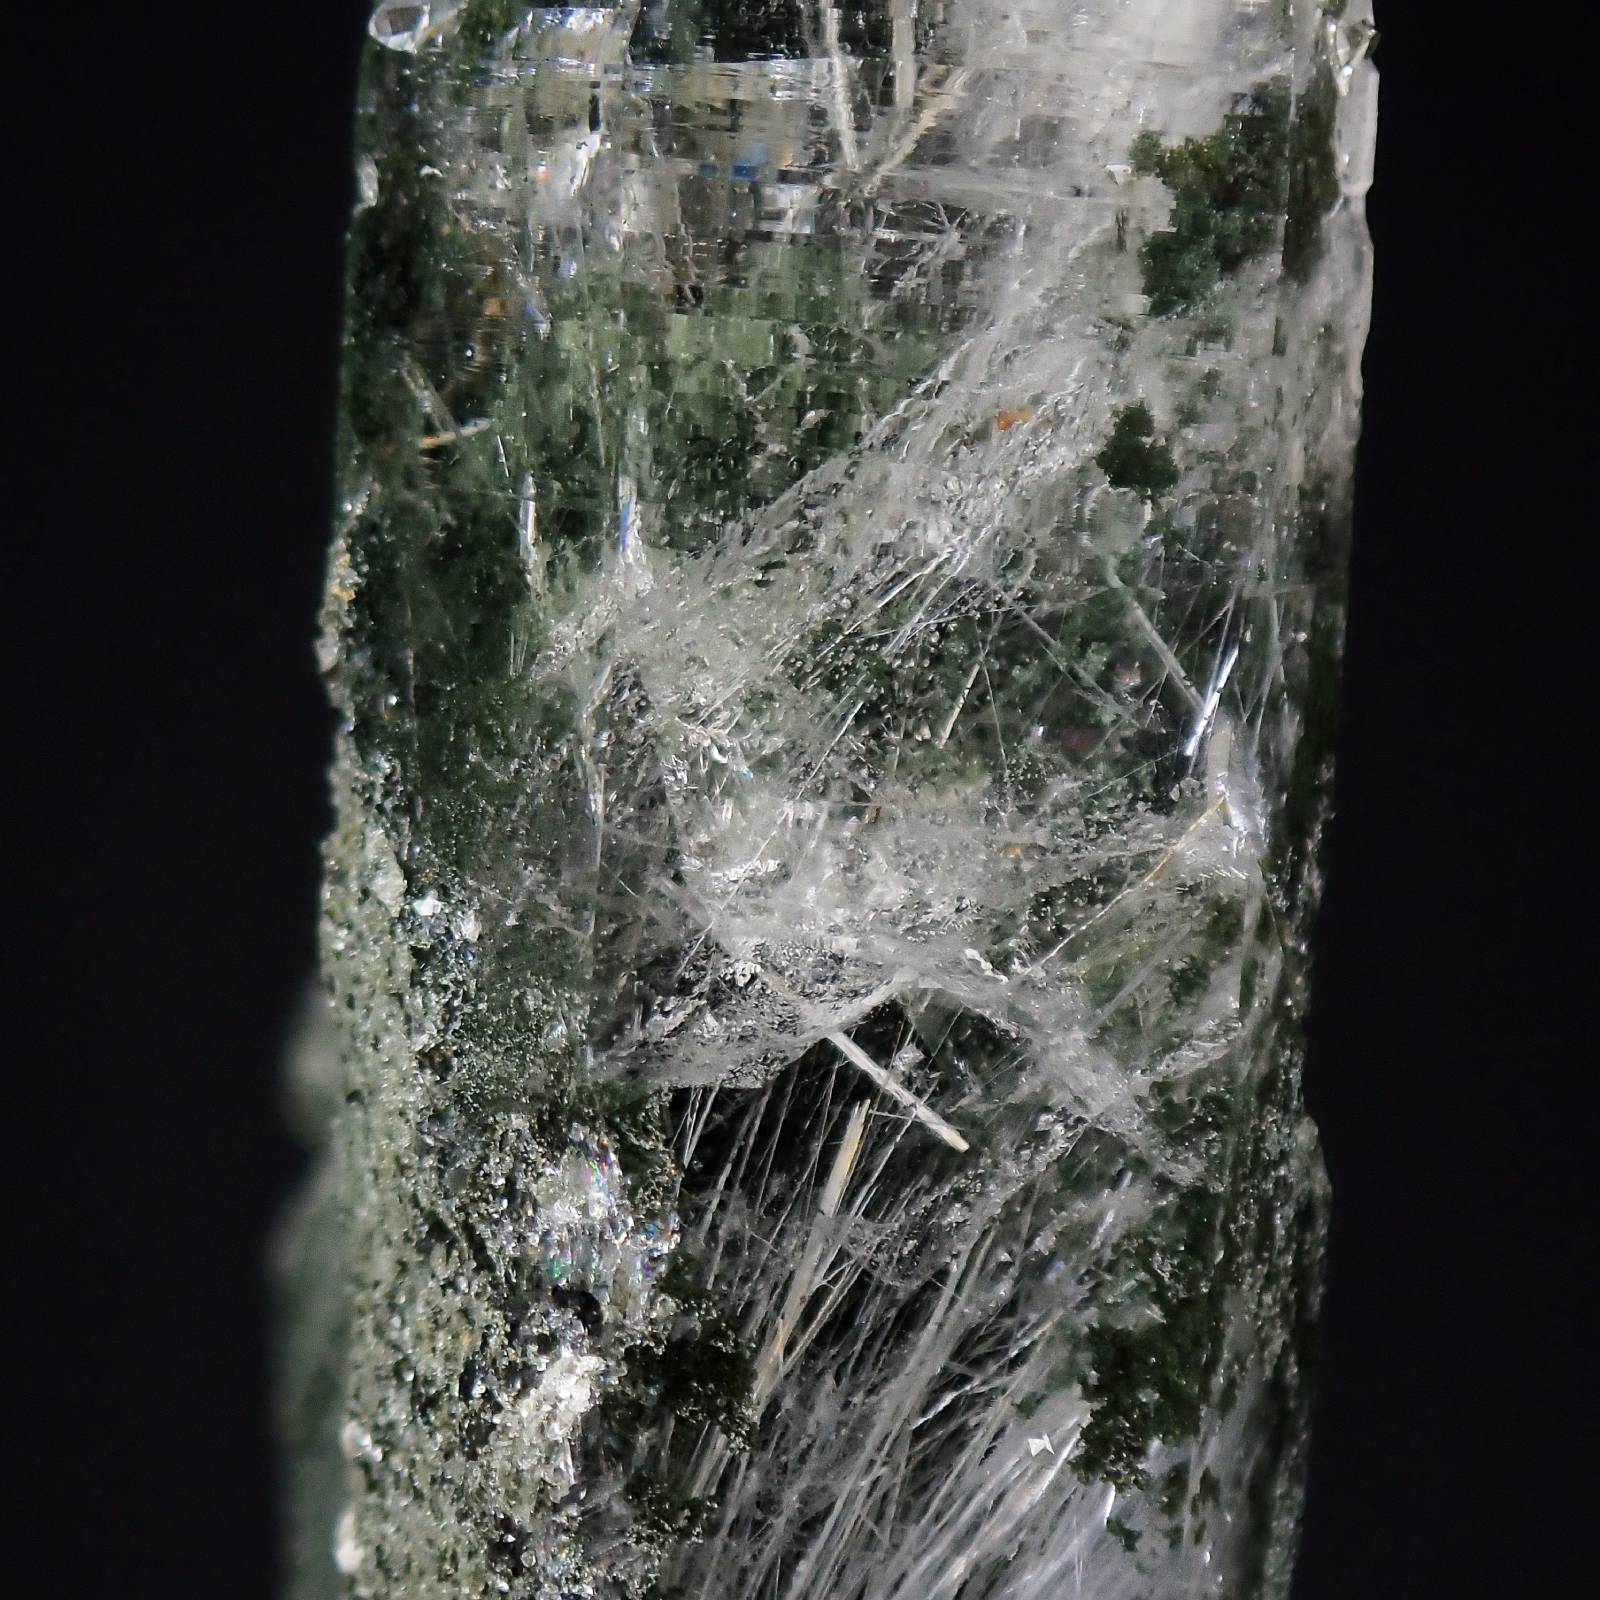 ガネーシュヒマール ヒマラヤ水晶1  Ganesh Himal Himalayan Crystal 原石 写真現物 動画あり